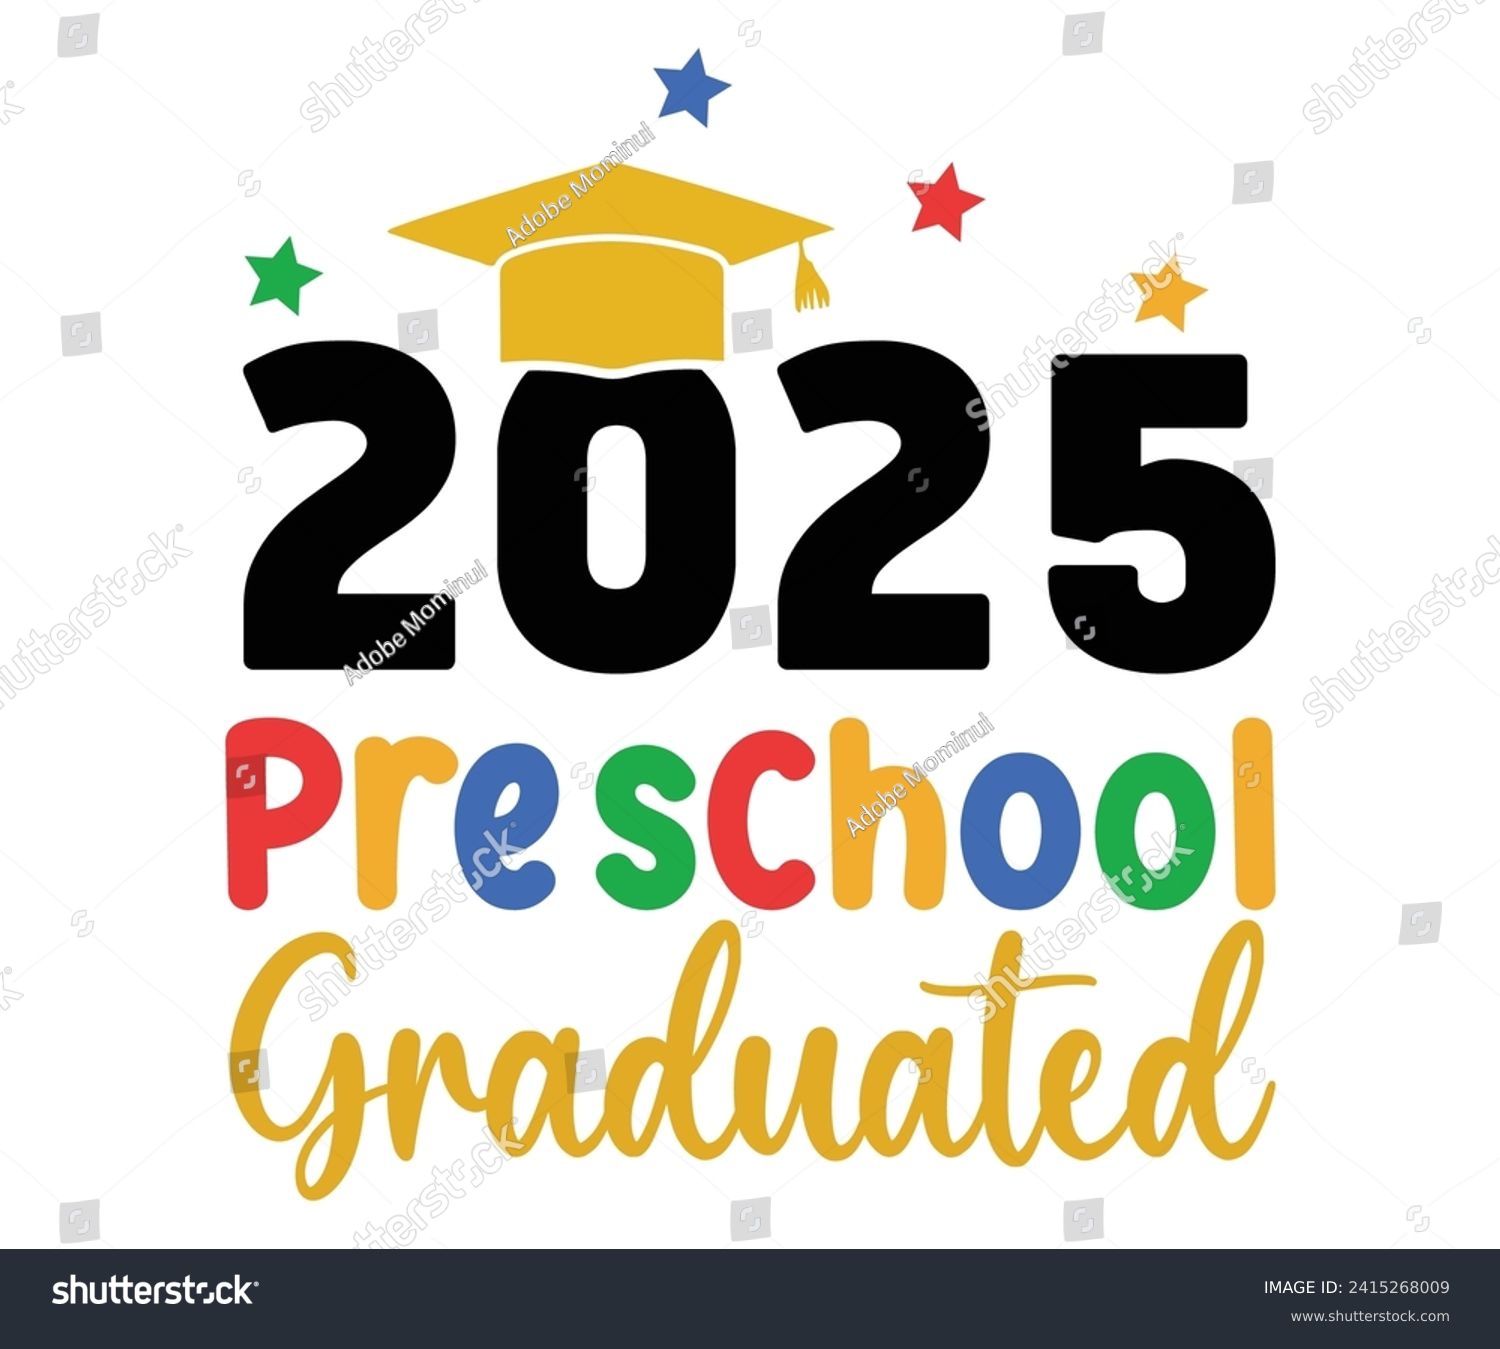 SVG of 2024 Preschool Graduate Svg,Graduation Svg,Senior Svg,Graduate T shirt,Graduation cap,Graduation 2024 Shirt,Family Graduation Svg,Pre-K Grad Shirt,Graduation Qoutes,Graduation Gift Shirt,Cut File, svg